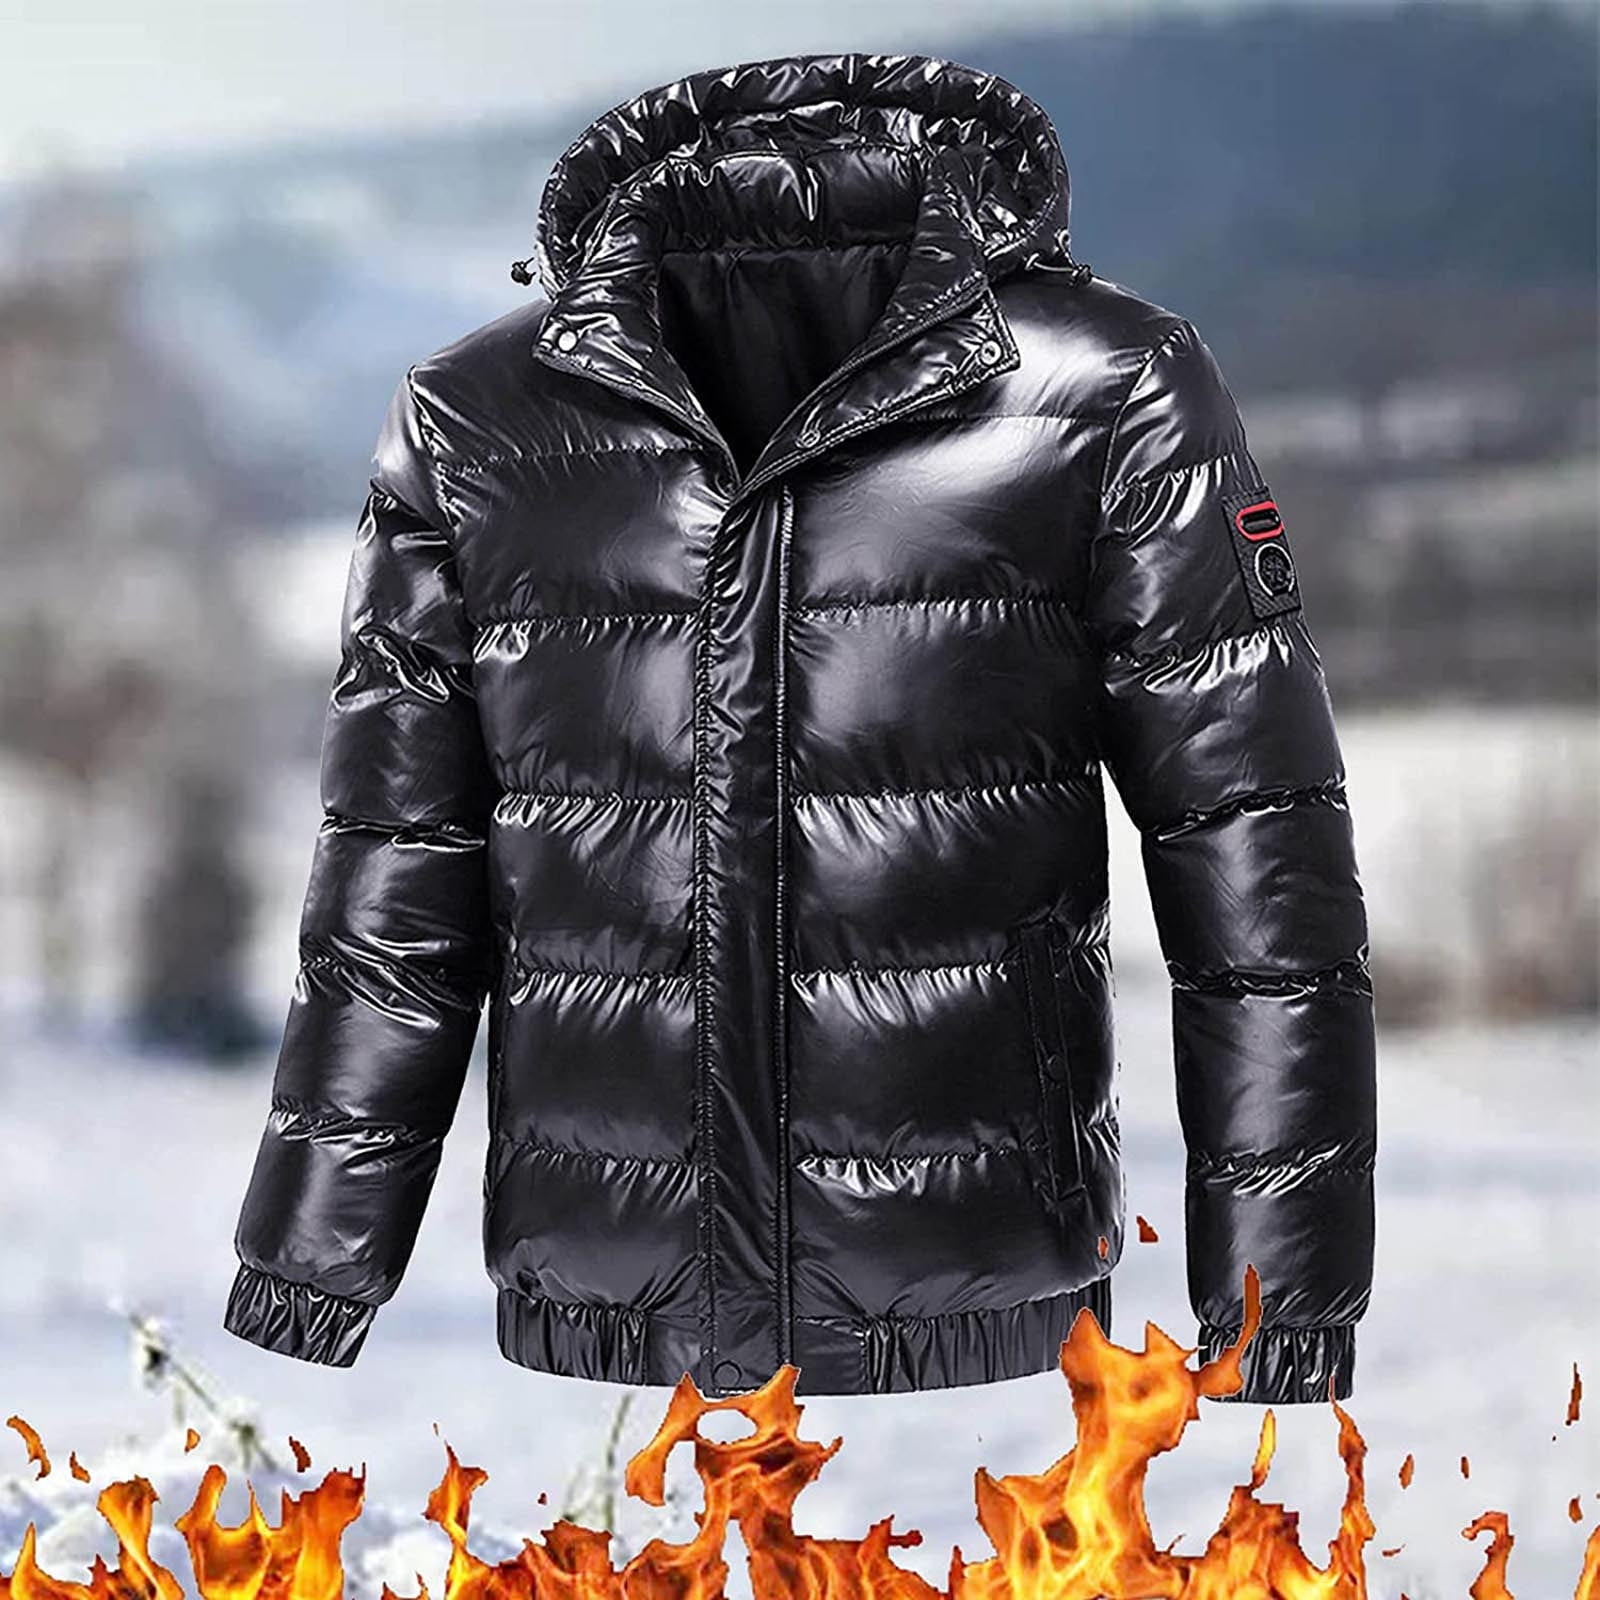 VKEKIEO Graphic Hoodies Mens Zip Up Hoodies,Outdoor Warm Inner Liner Fleece  Jacket Men's Cold Proof Stormsuit Hood Jacket Solid Color Hooded Jacket